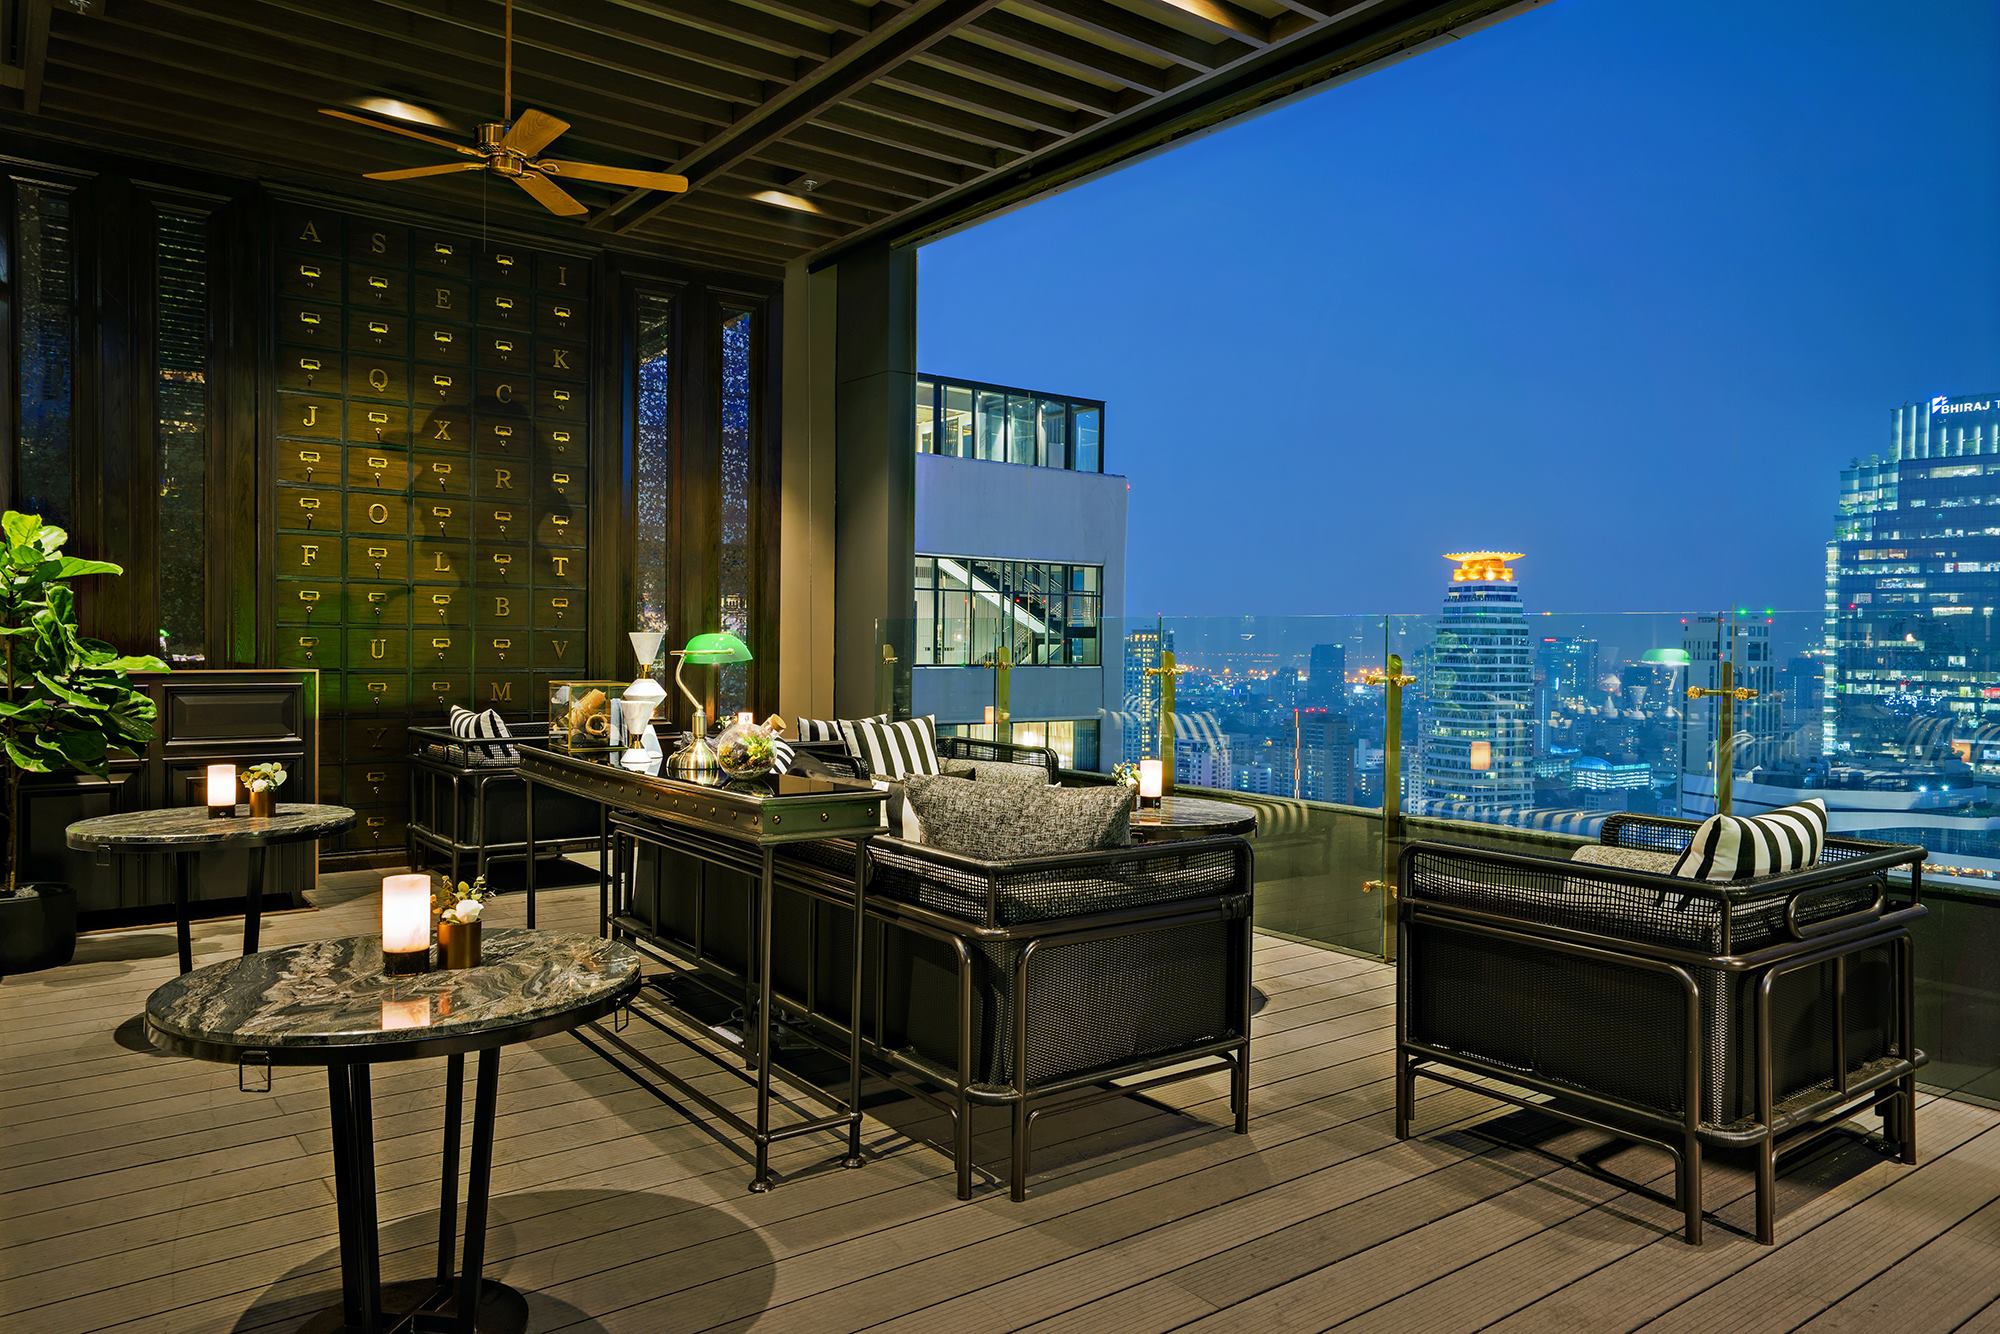 เอบาร์ แอนด์ เอบาร์รูฟท็อปบาร์ (ABar & ABar Rooftop) : กรุงเทพมหานคร (Bangkok)